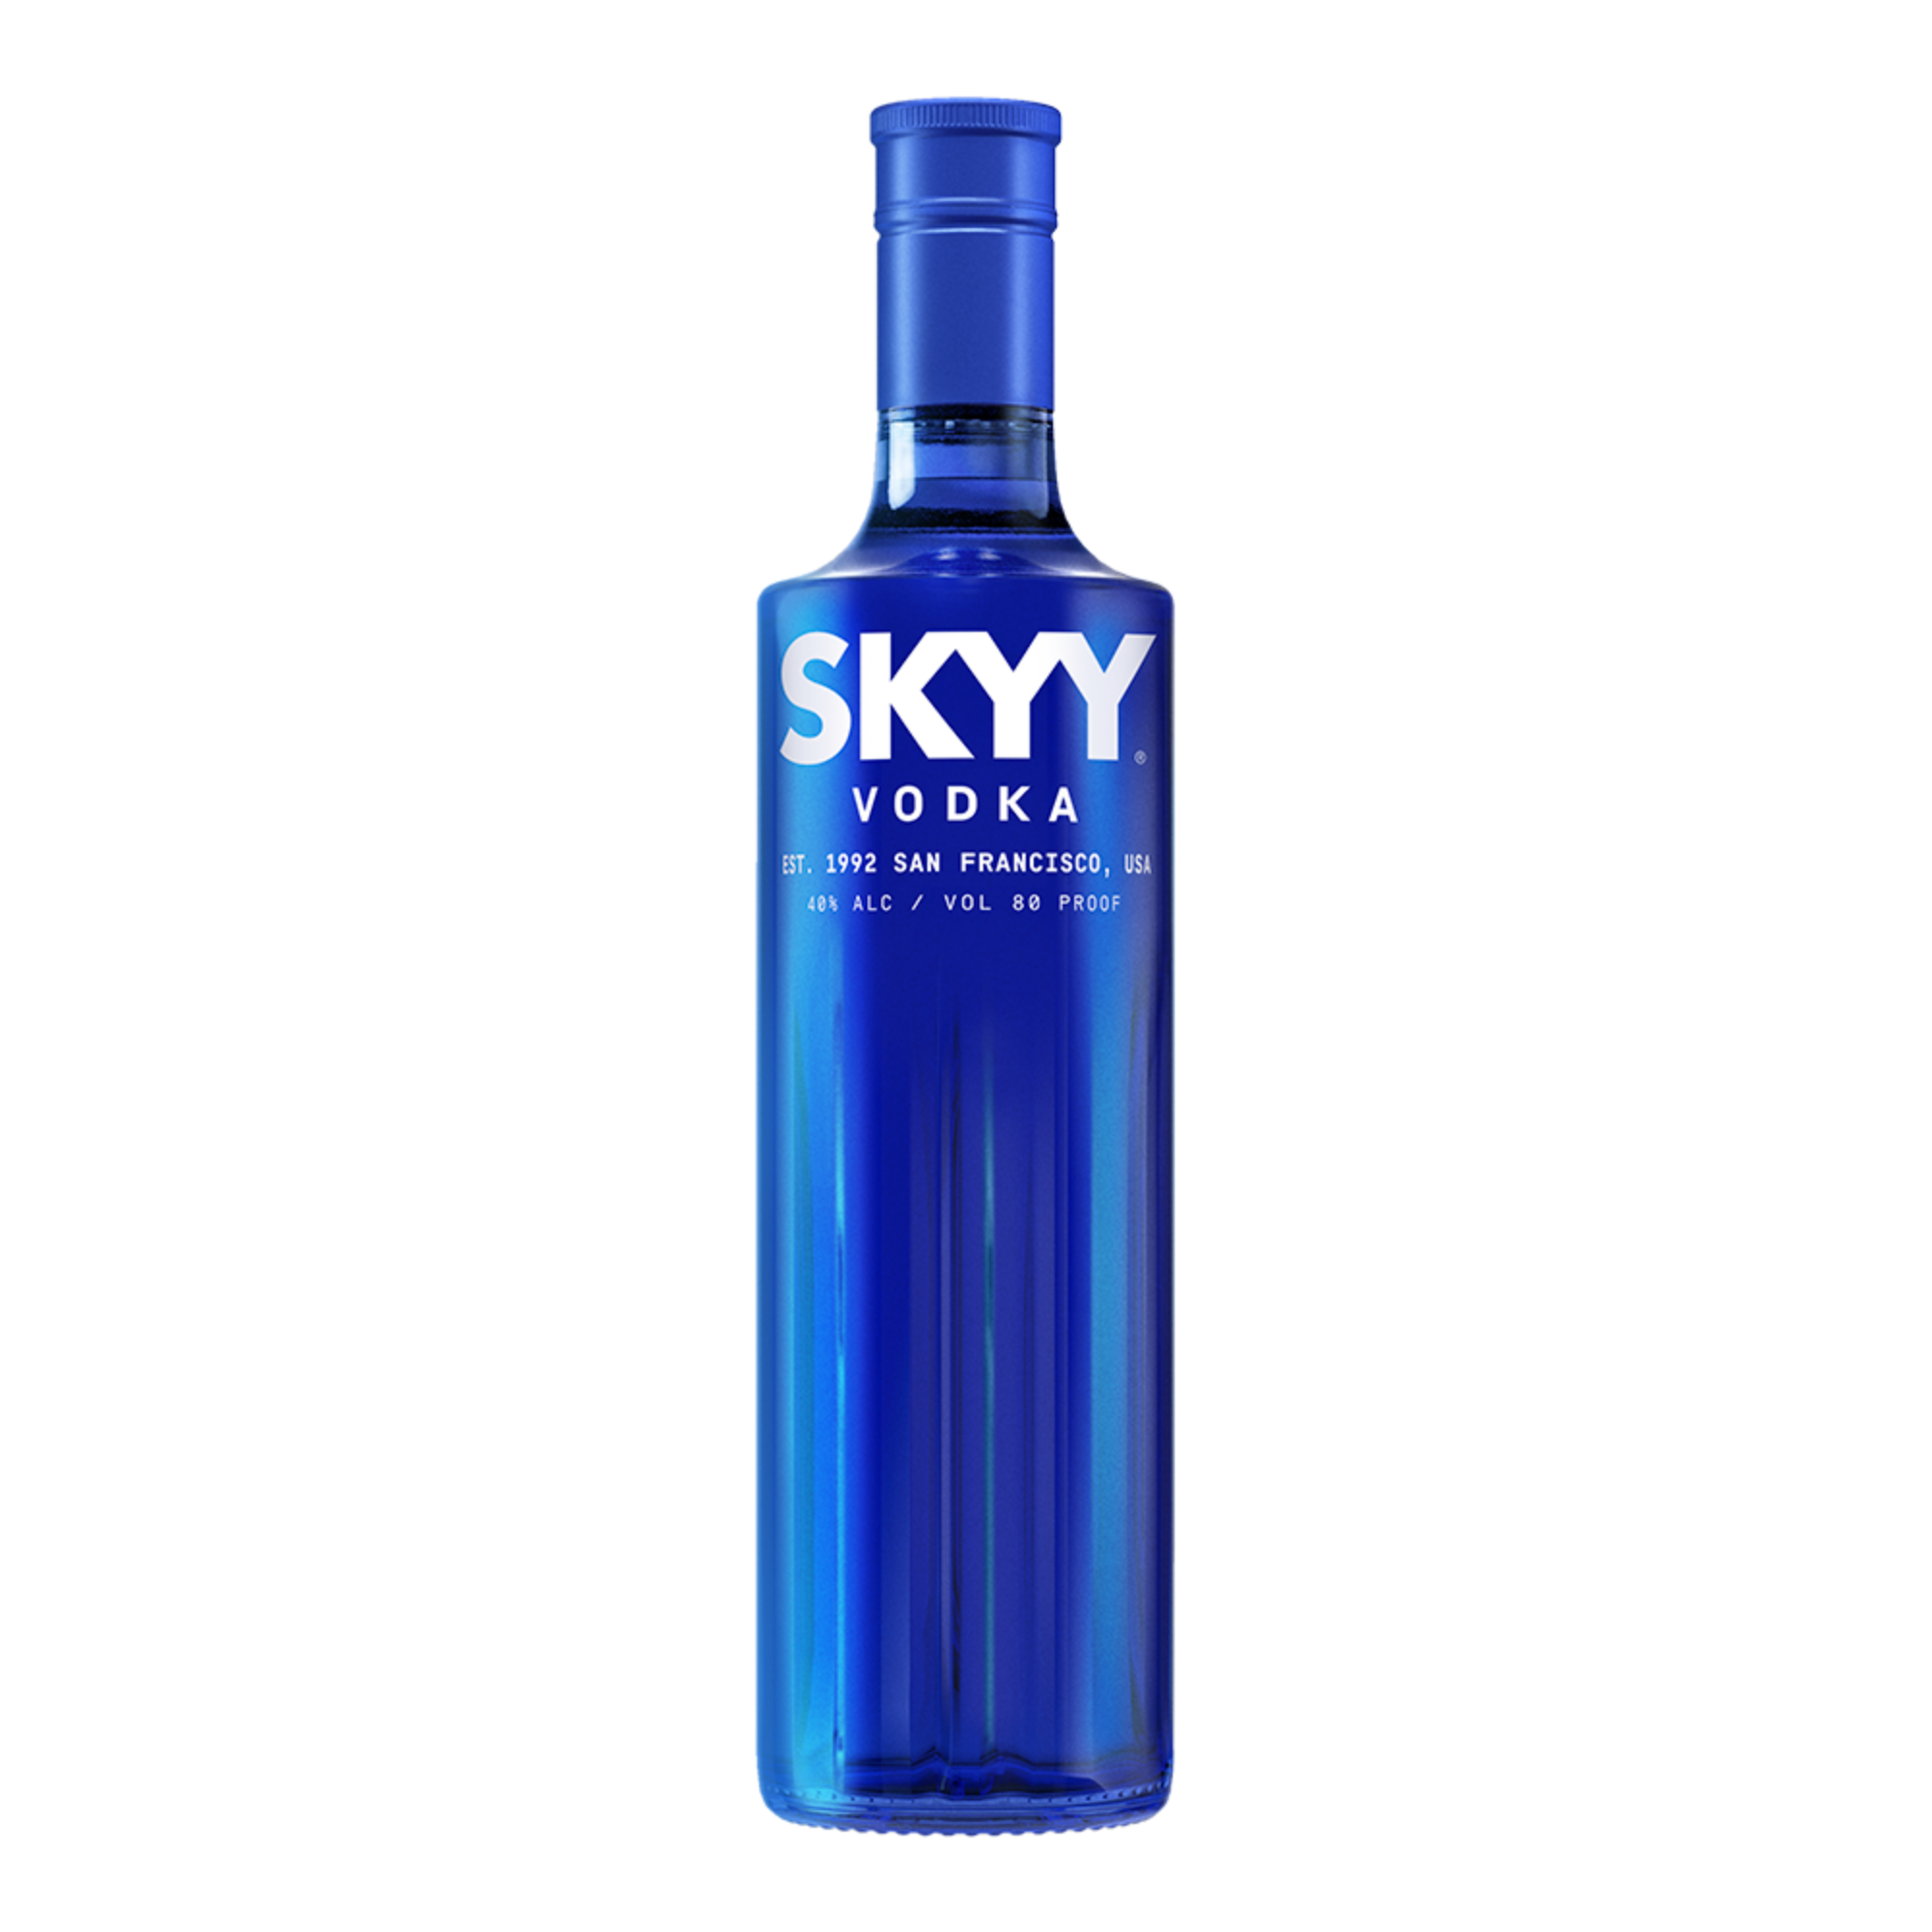 vodka-skyy-750-ml-sampieri-vinos-y-licores